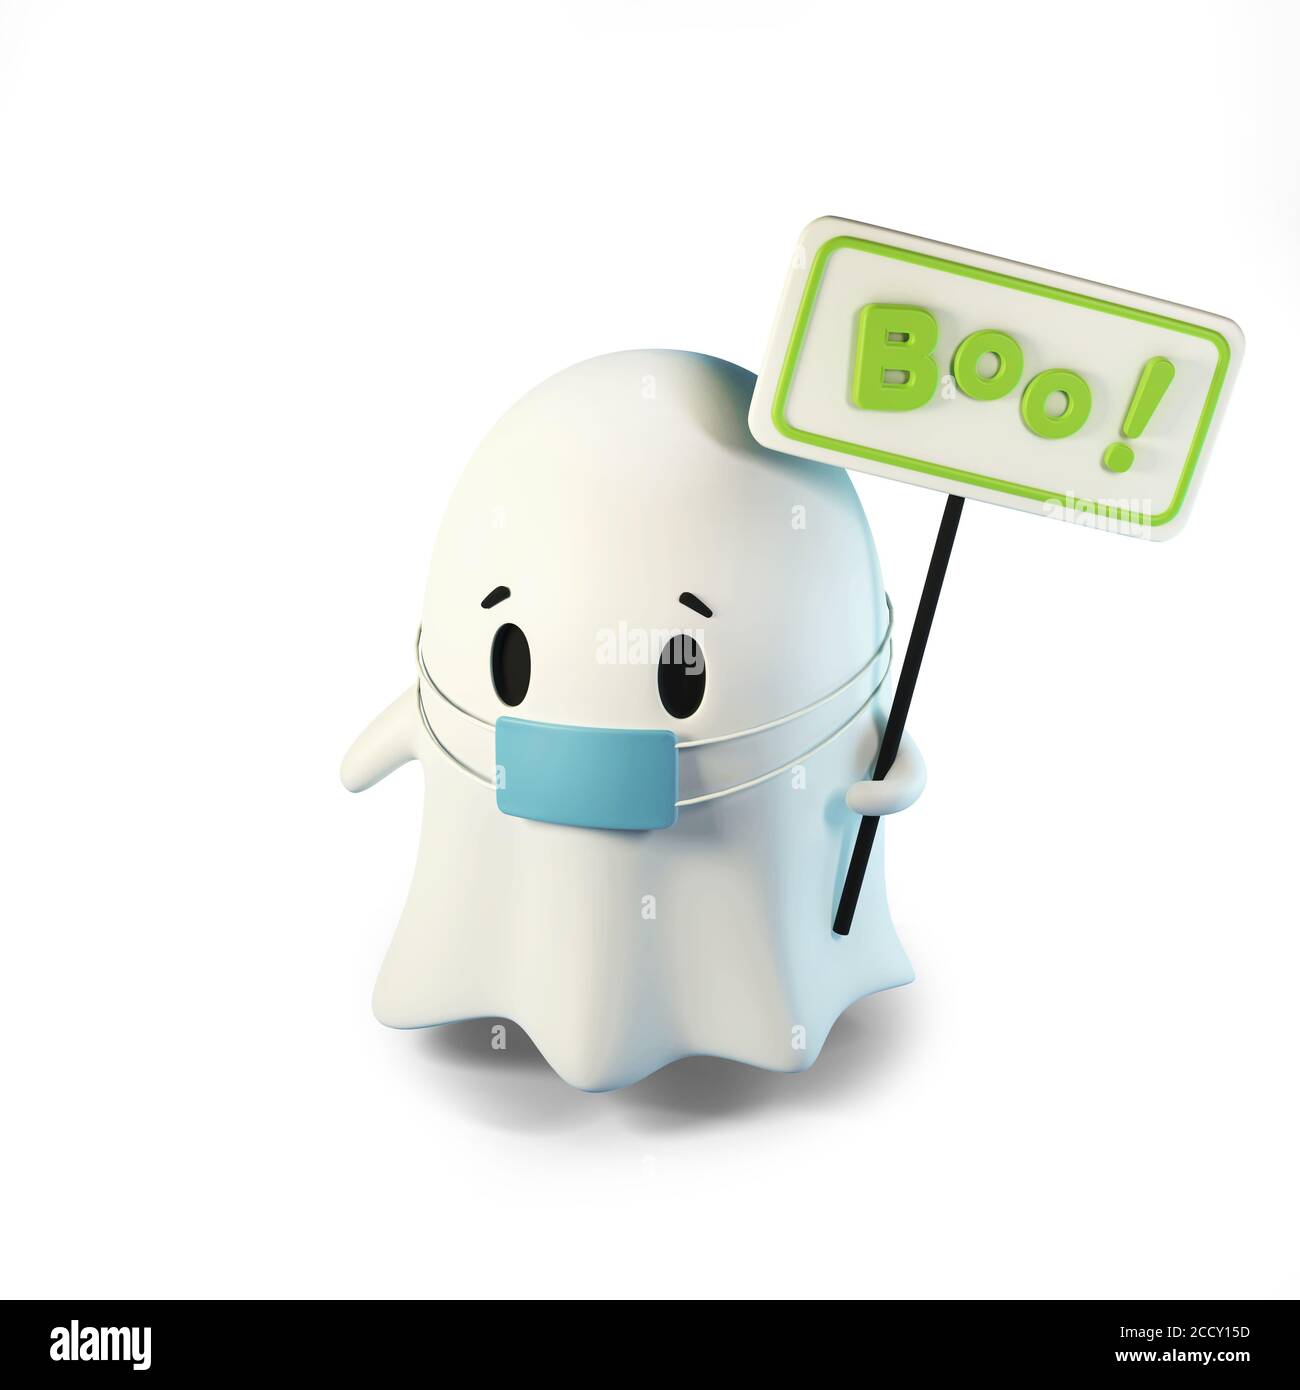 Illustration de rendu 3D de cute friendly Ghost dans un masque médical. Avec une inscription sur le panneau Boo isolé sur blanc Banque D'Images